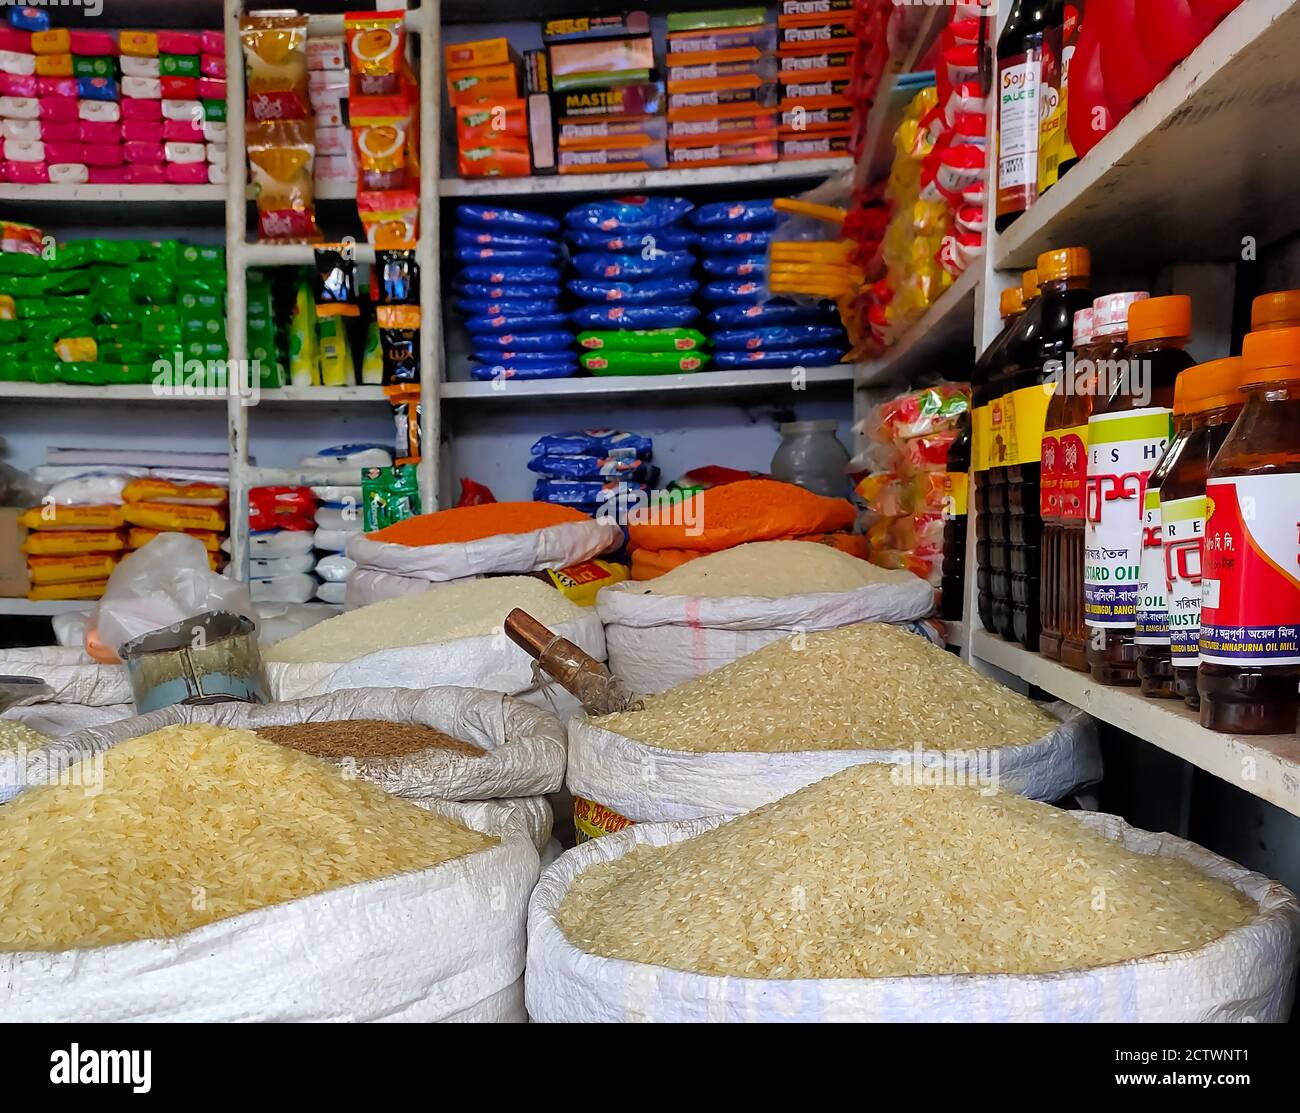 25 septembre 2020, Dhaka, Bangladesh. Les articles d'épicerie sont présentés en vente libre sur un marché local de Dhaka, au Bangladesh. Banque D'Images